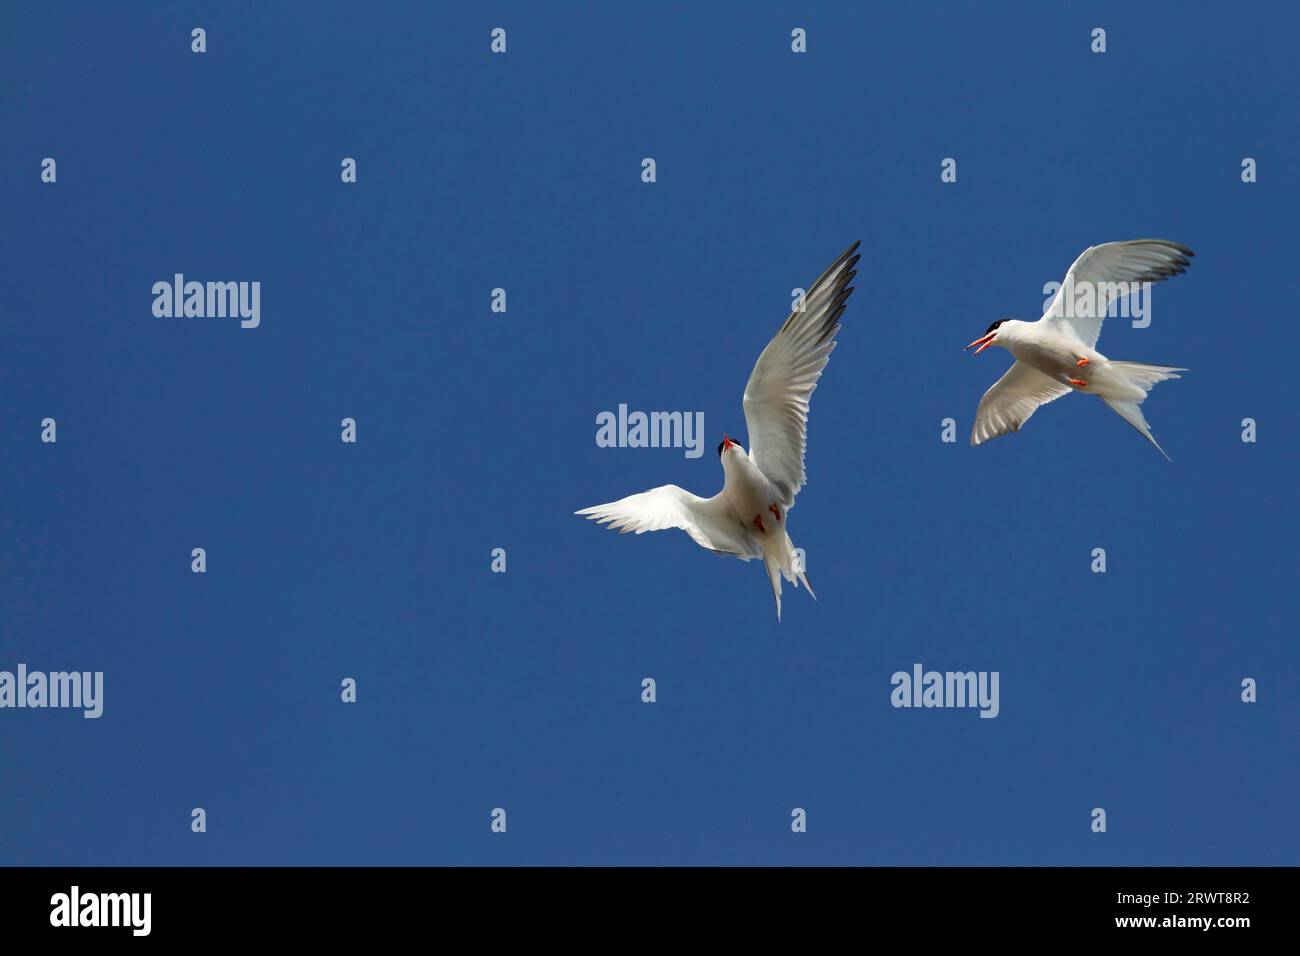 Il comune Tern (Sterna hirundo) è un migrante a lunga distanza (Photo air combat between adult Birds), il comune Tern la maggior parte delle popolazioni sono migratorie (Photo Air Foto Stock